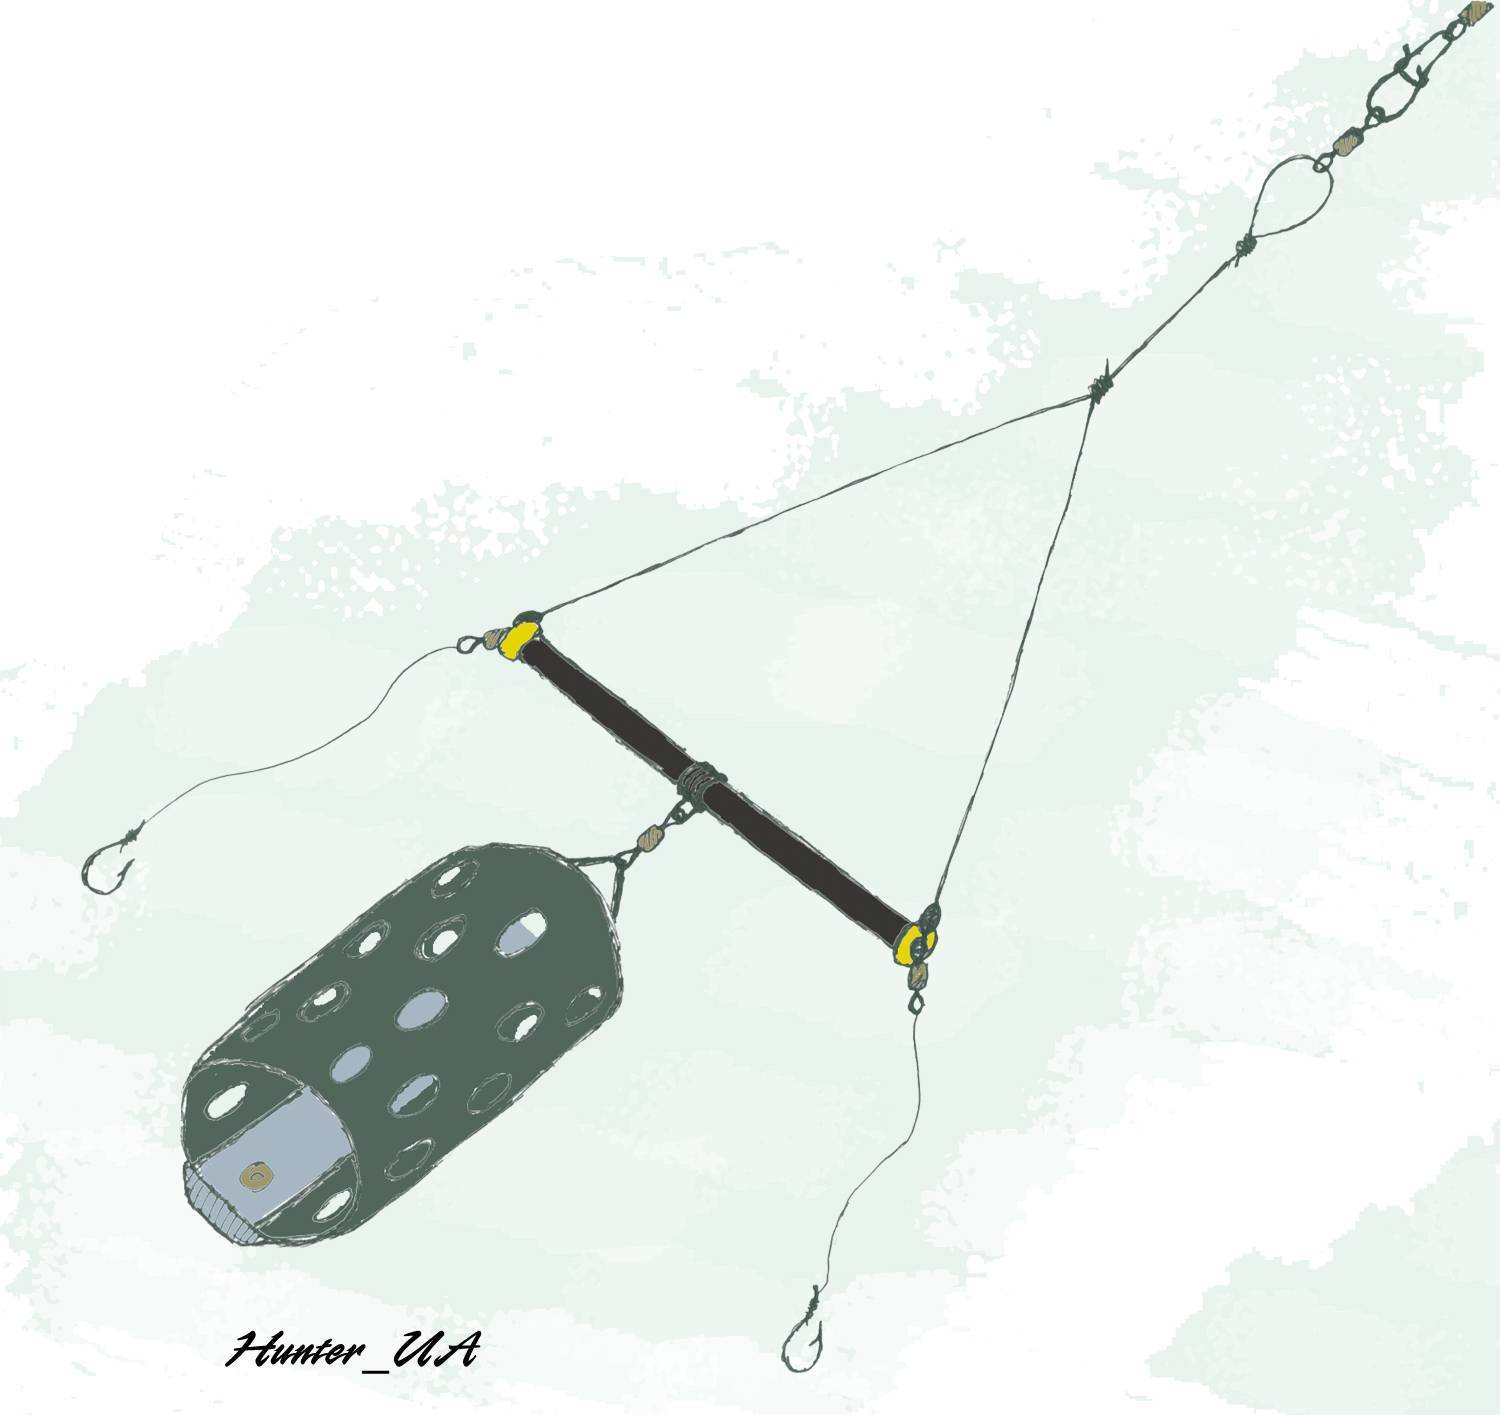 Готовим необходимое снаряжение для зимней рыбалки: снасти своими руками